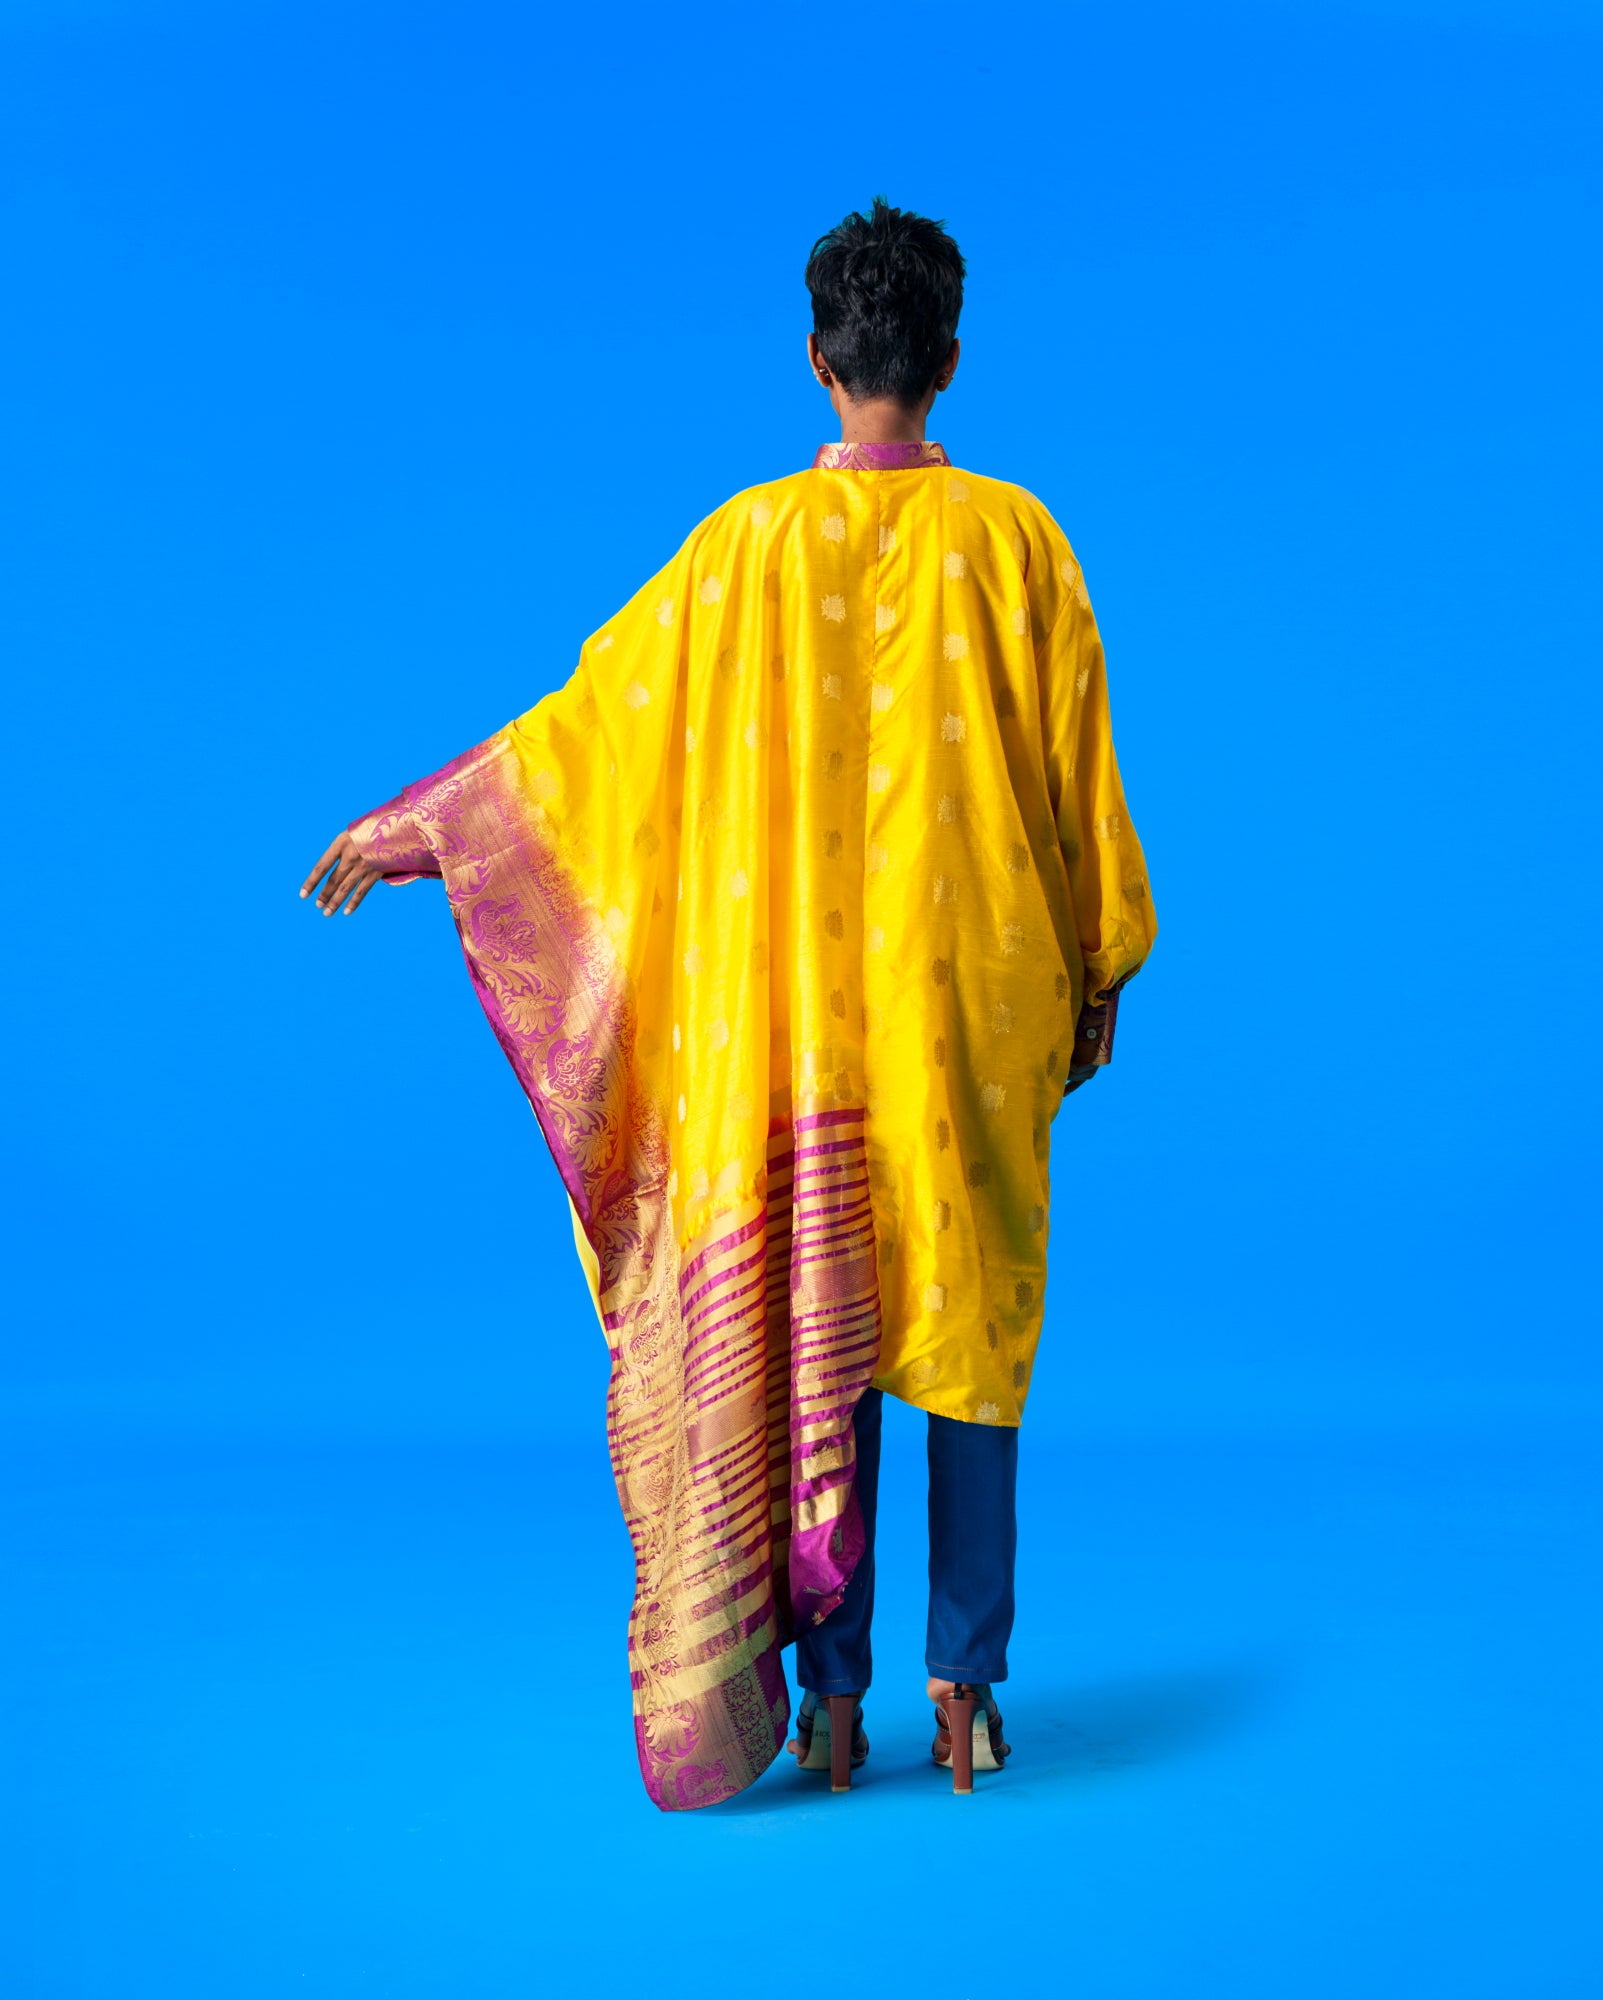 Shirtree in Chanderi (yellow)